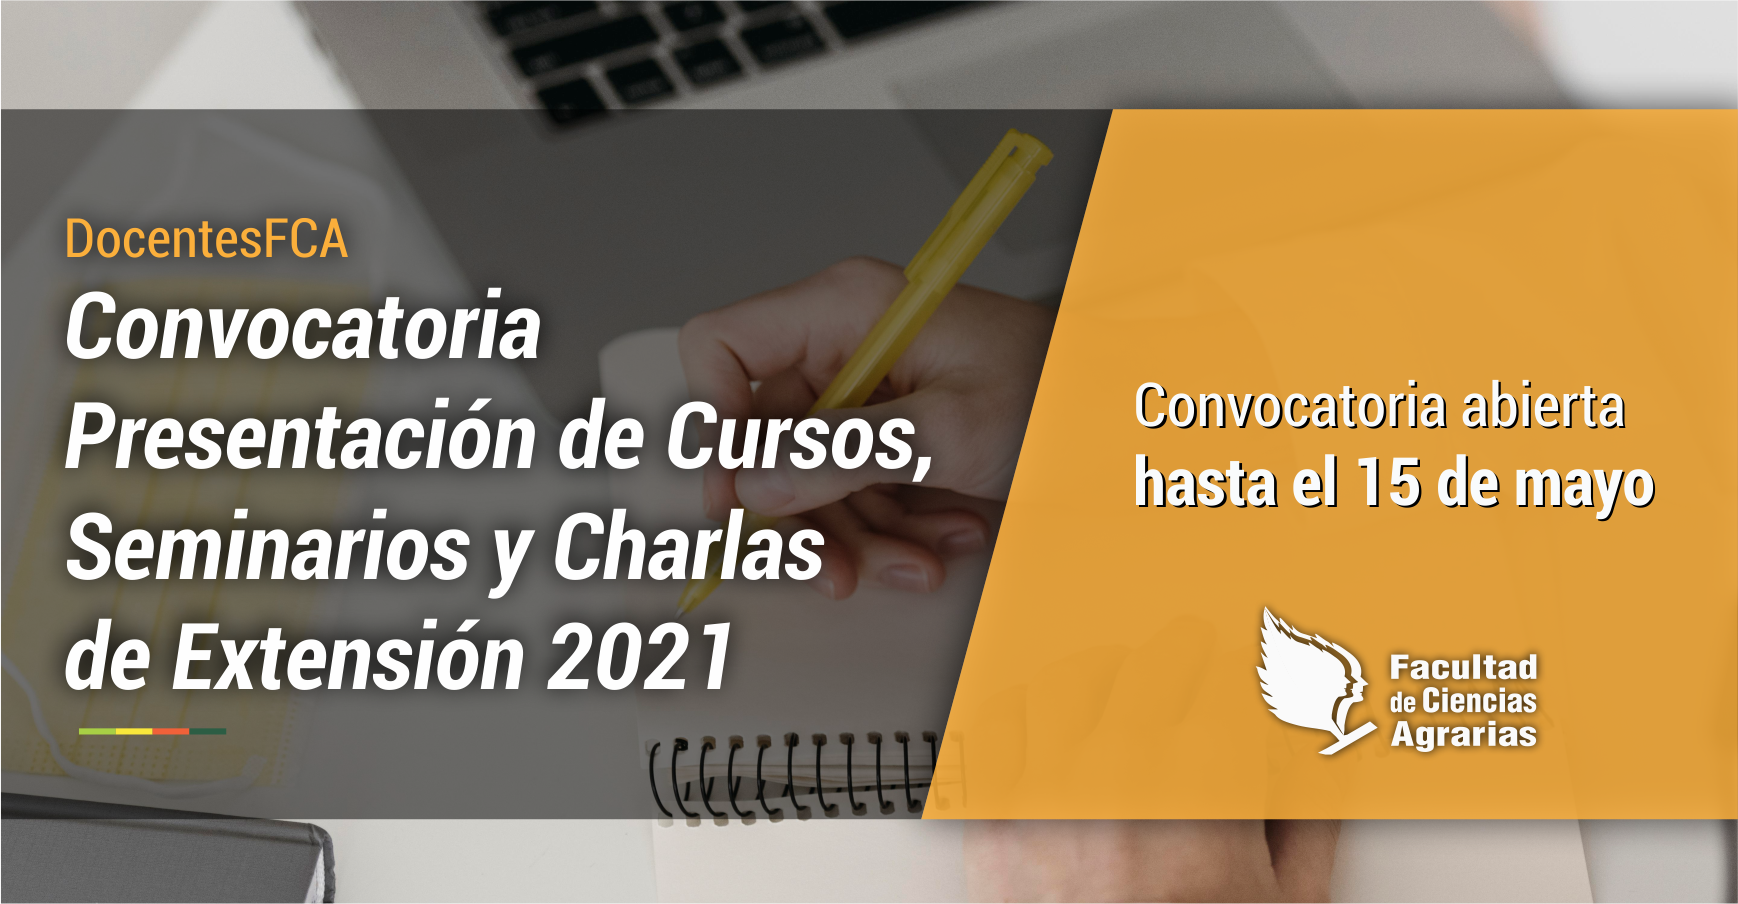 DocentesFCA | Convocatoria para presentación de Cursos, Seminarios y Charlas de Extensión 2021